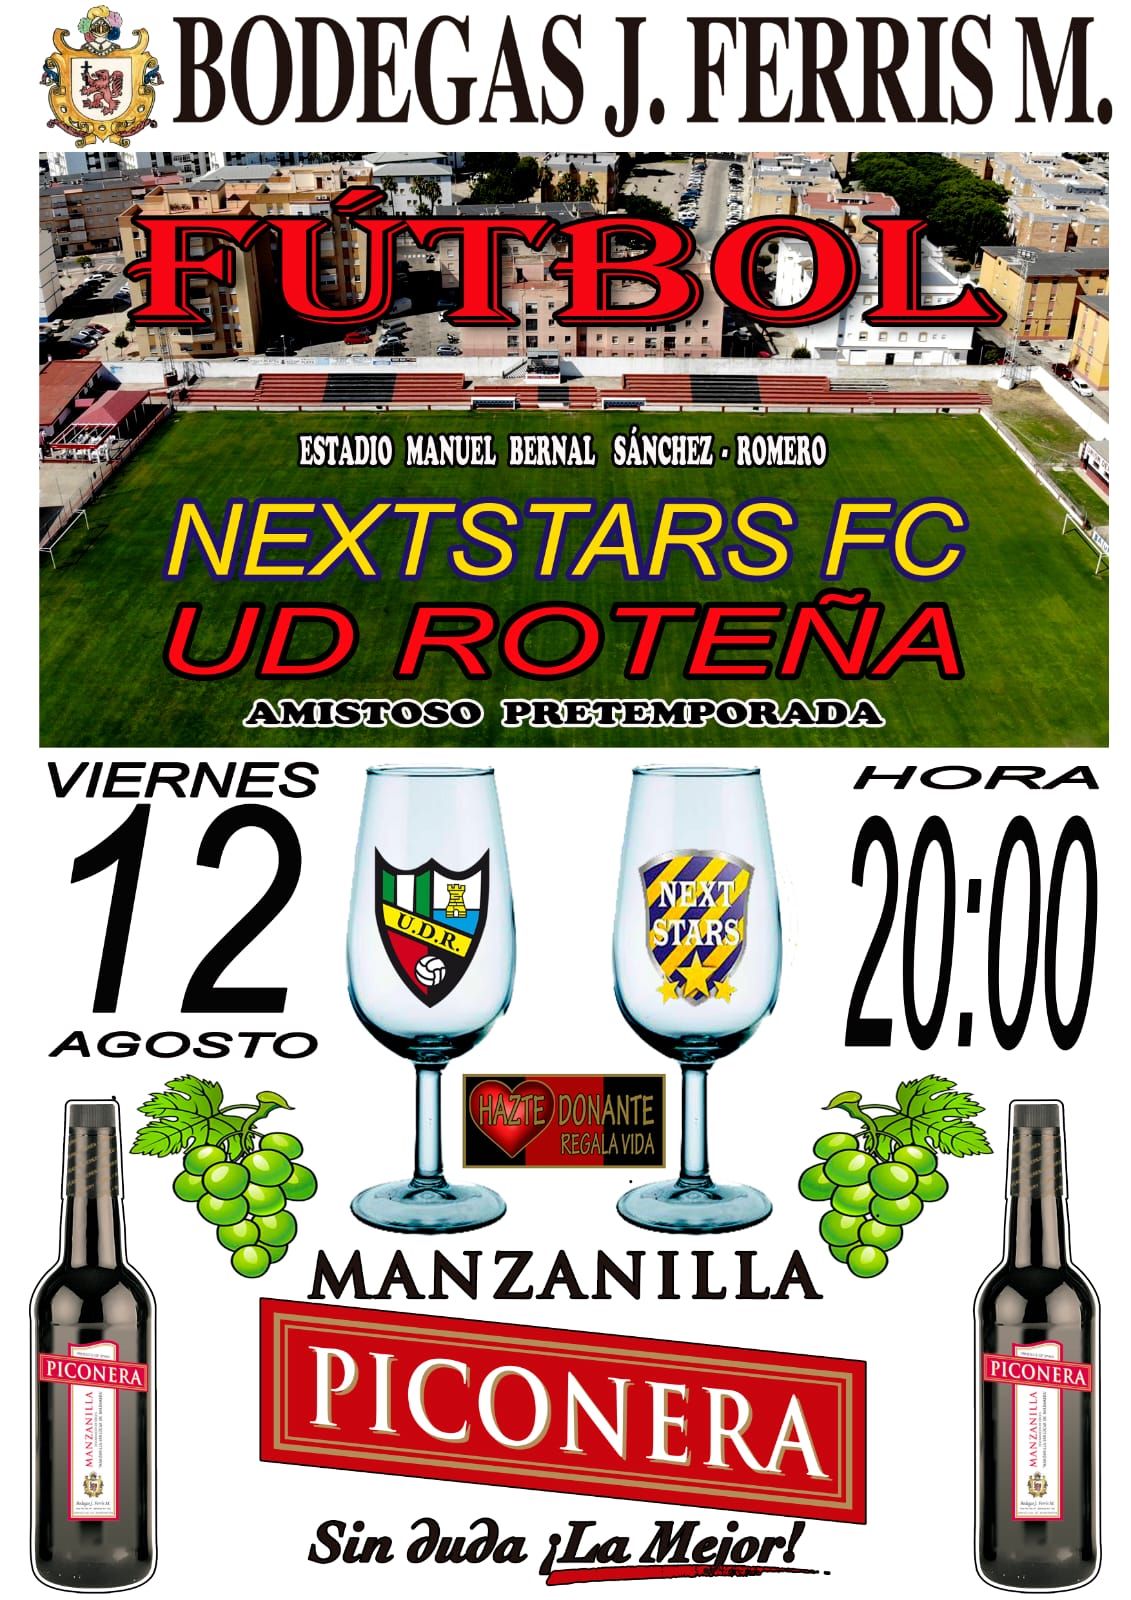 UD Roteña - Nexstars FC